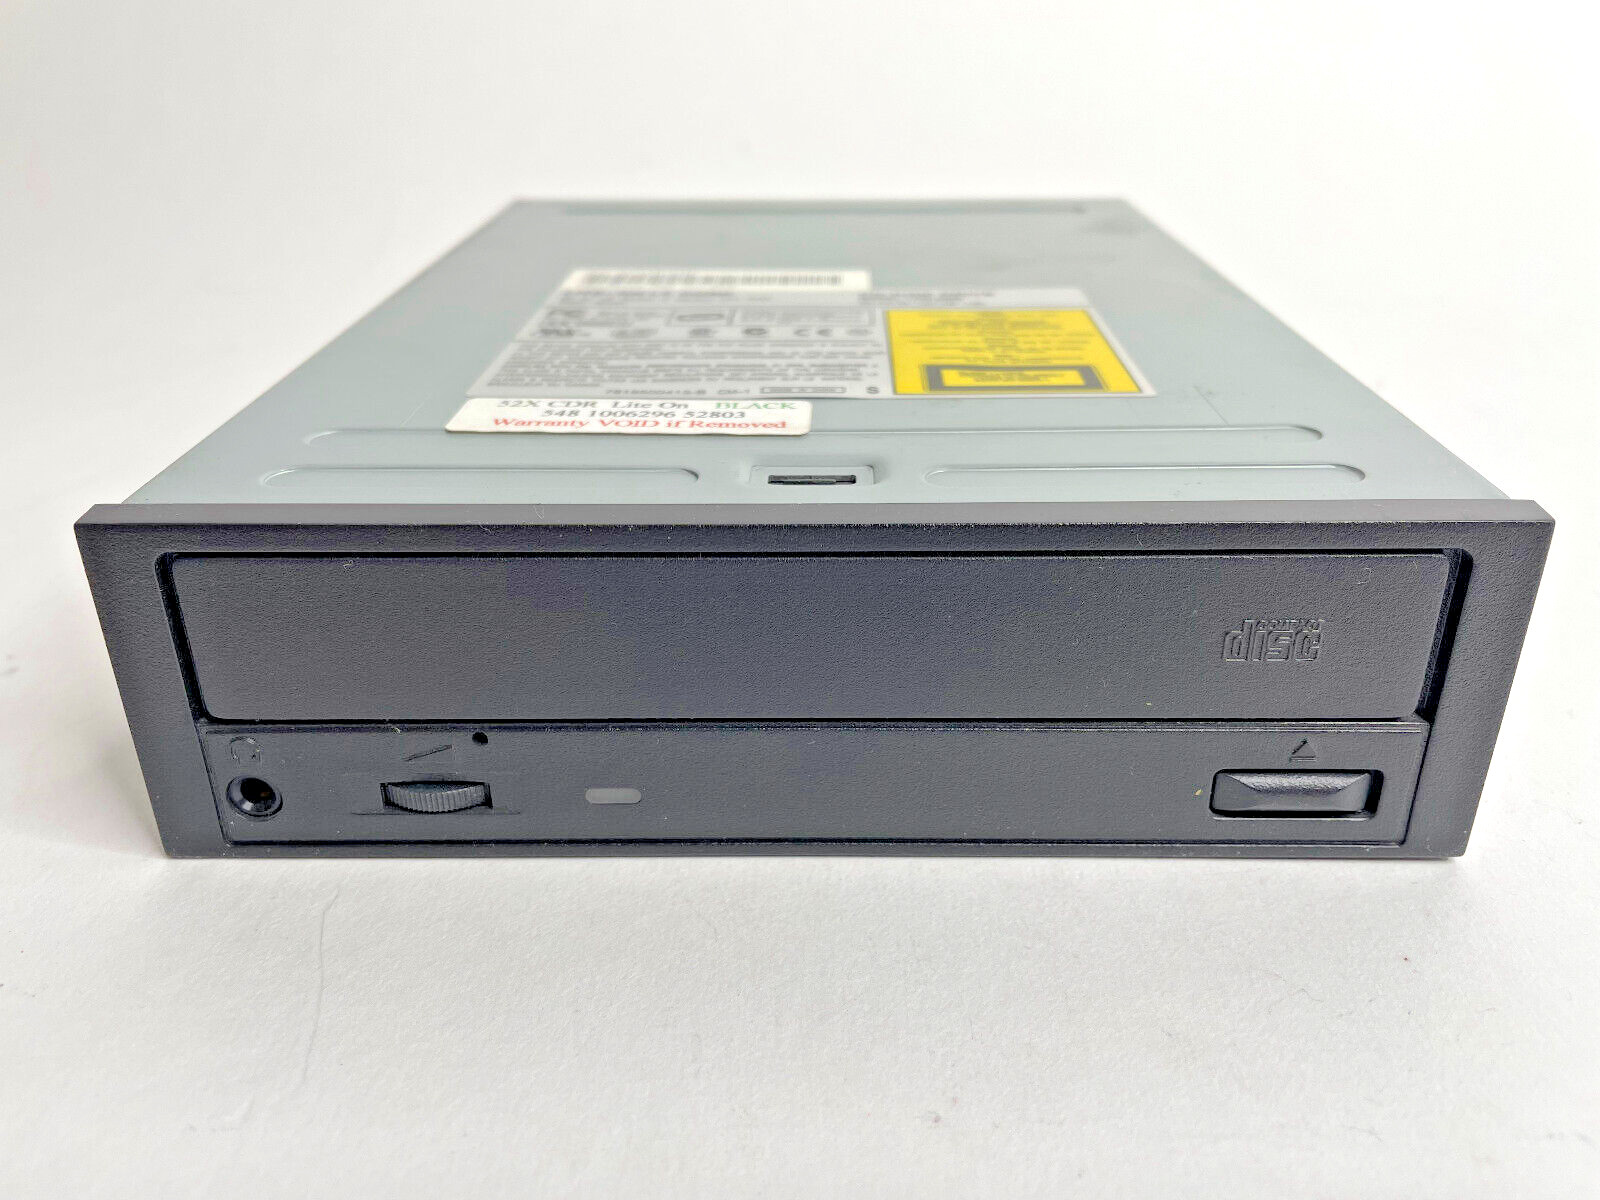 LITE-ON 52x CDROM Internal IDE Disk Drive (Black, Model LTN-526S) TESTED